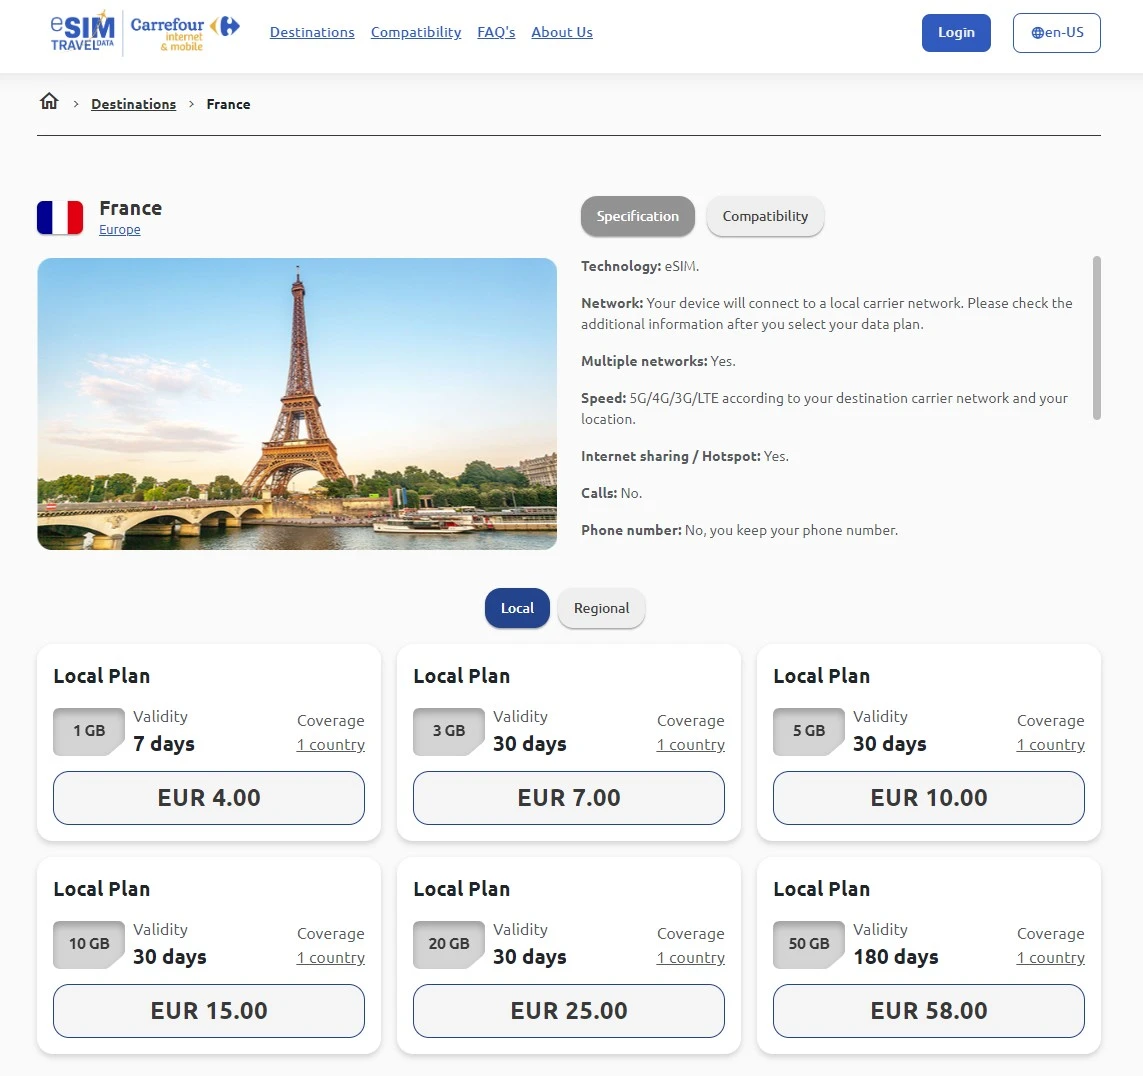 Carrefour eSIM Travel Data